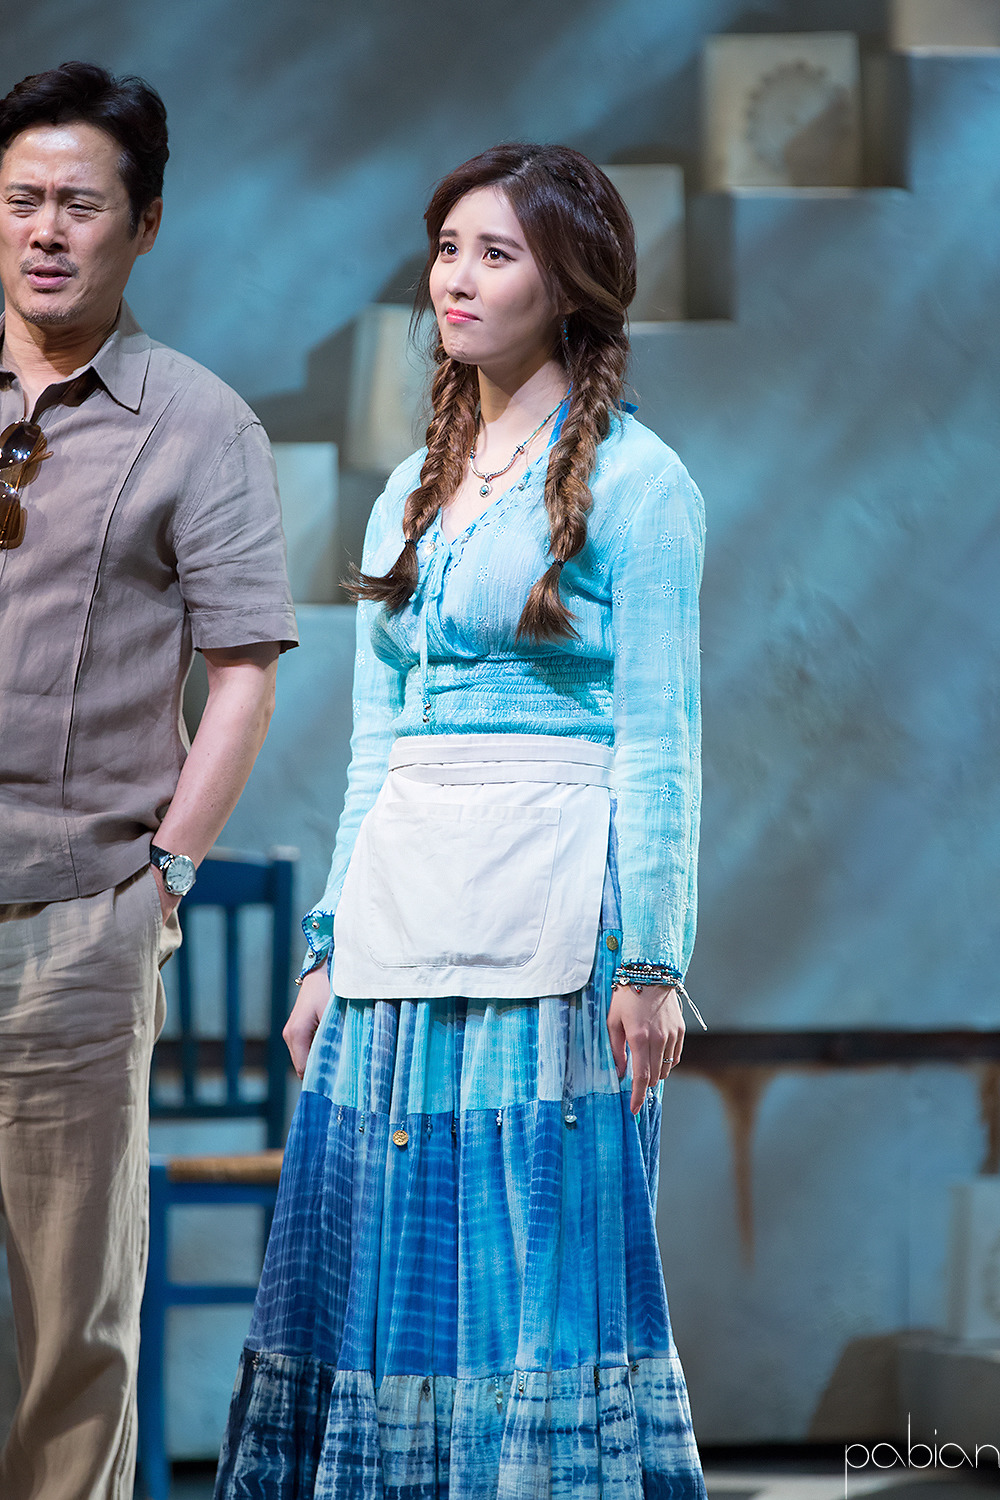 [OTHER][08-12-2015]SeoHyun tham dự vở nhạc kịch mới mang tên "Mamma Mia!" - Page 3 2707E53E56CD3800274B6C